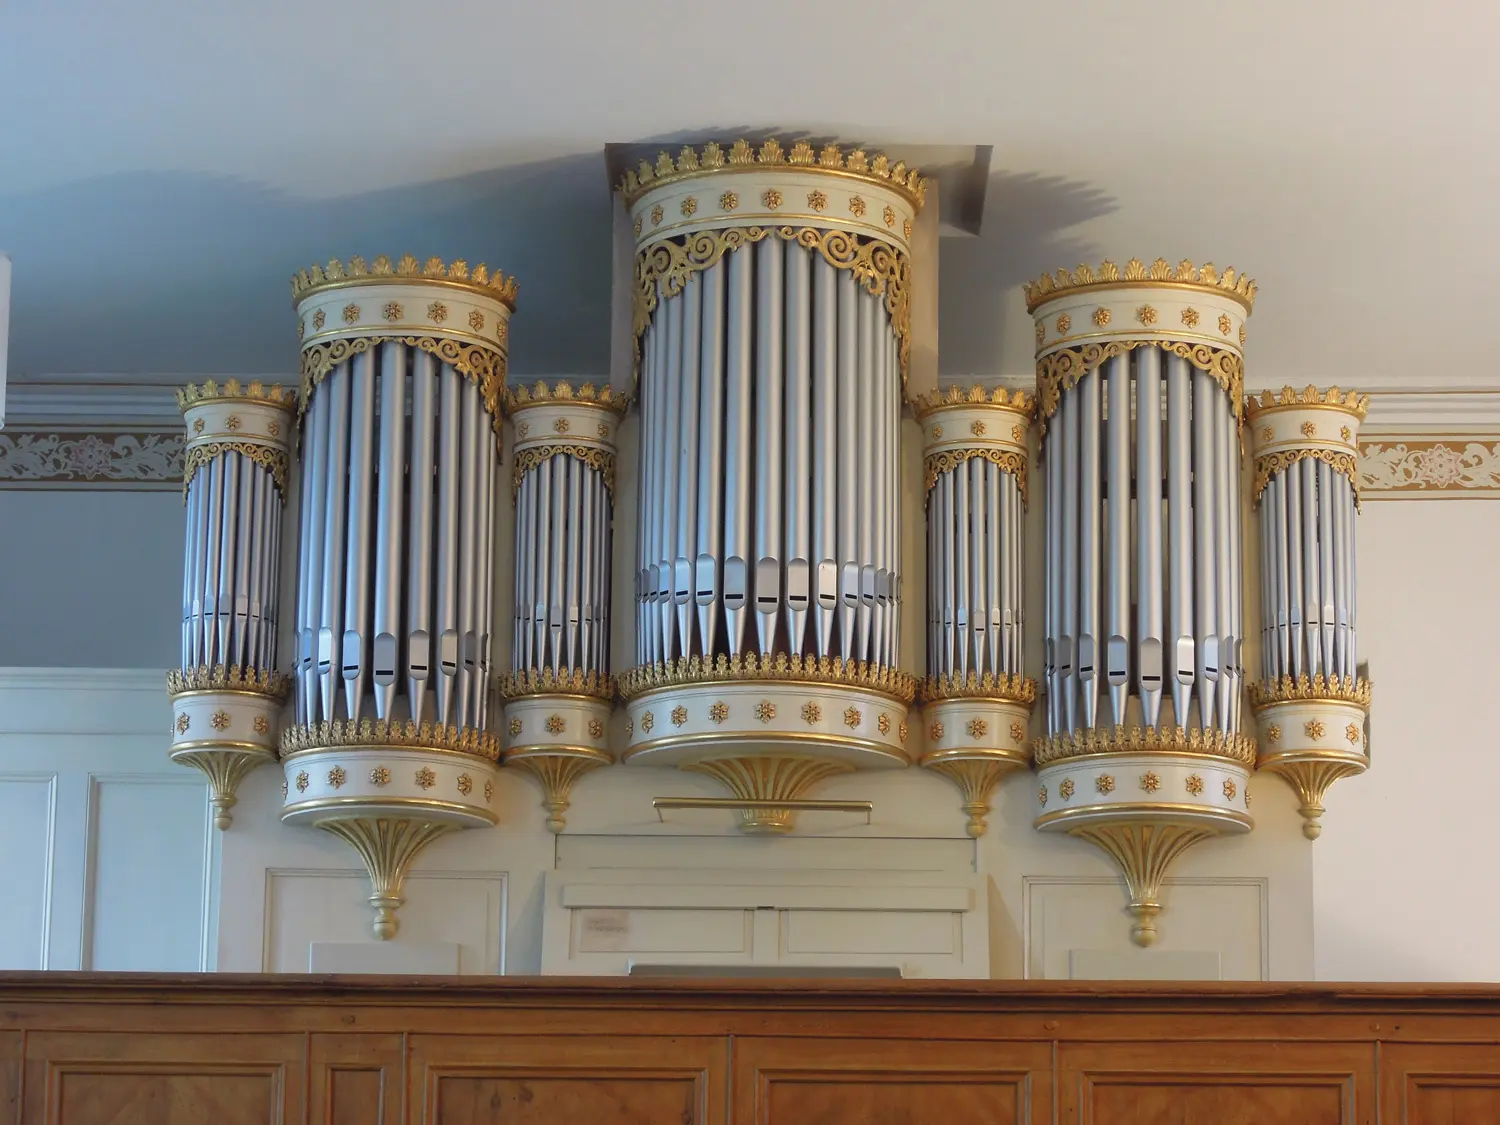 Die Orgel in Blindow in der Uckermark nördlich von Prenzlau erbaute August Buchholz 1849. Typisch für ihn ist die Anordnung der Prospektpfeifen in halbrunden Türmen / Foto: Michael Zagorni 